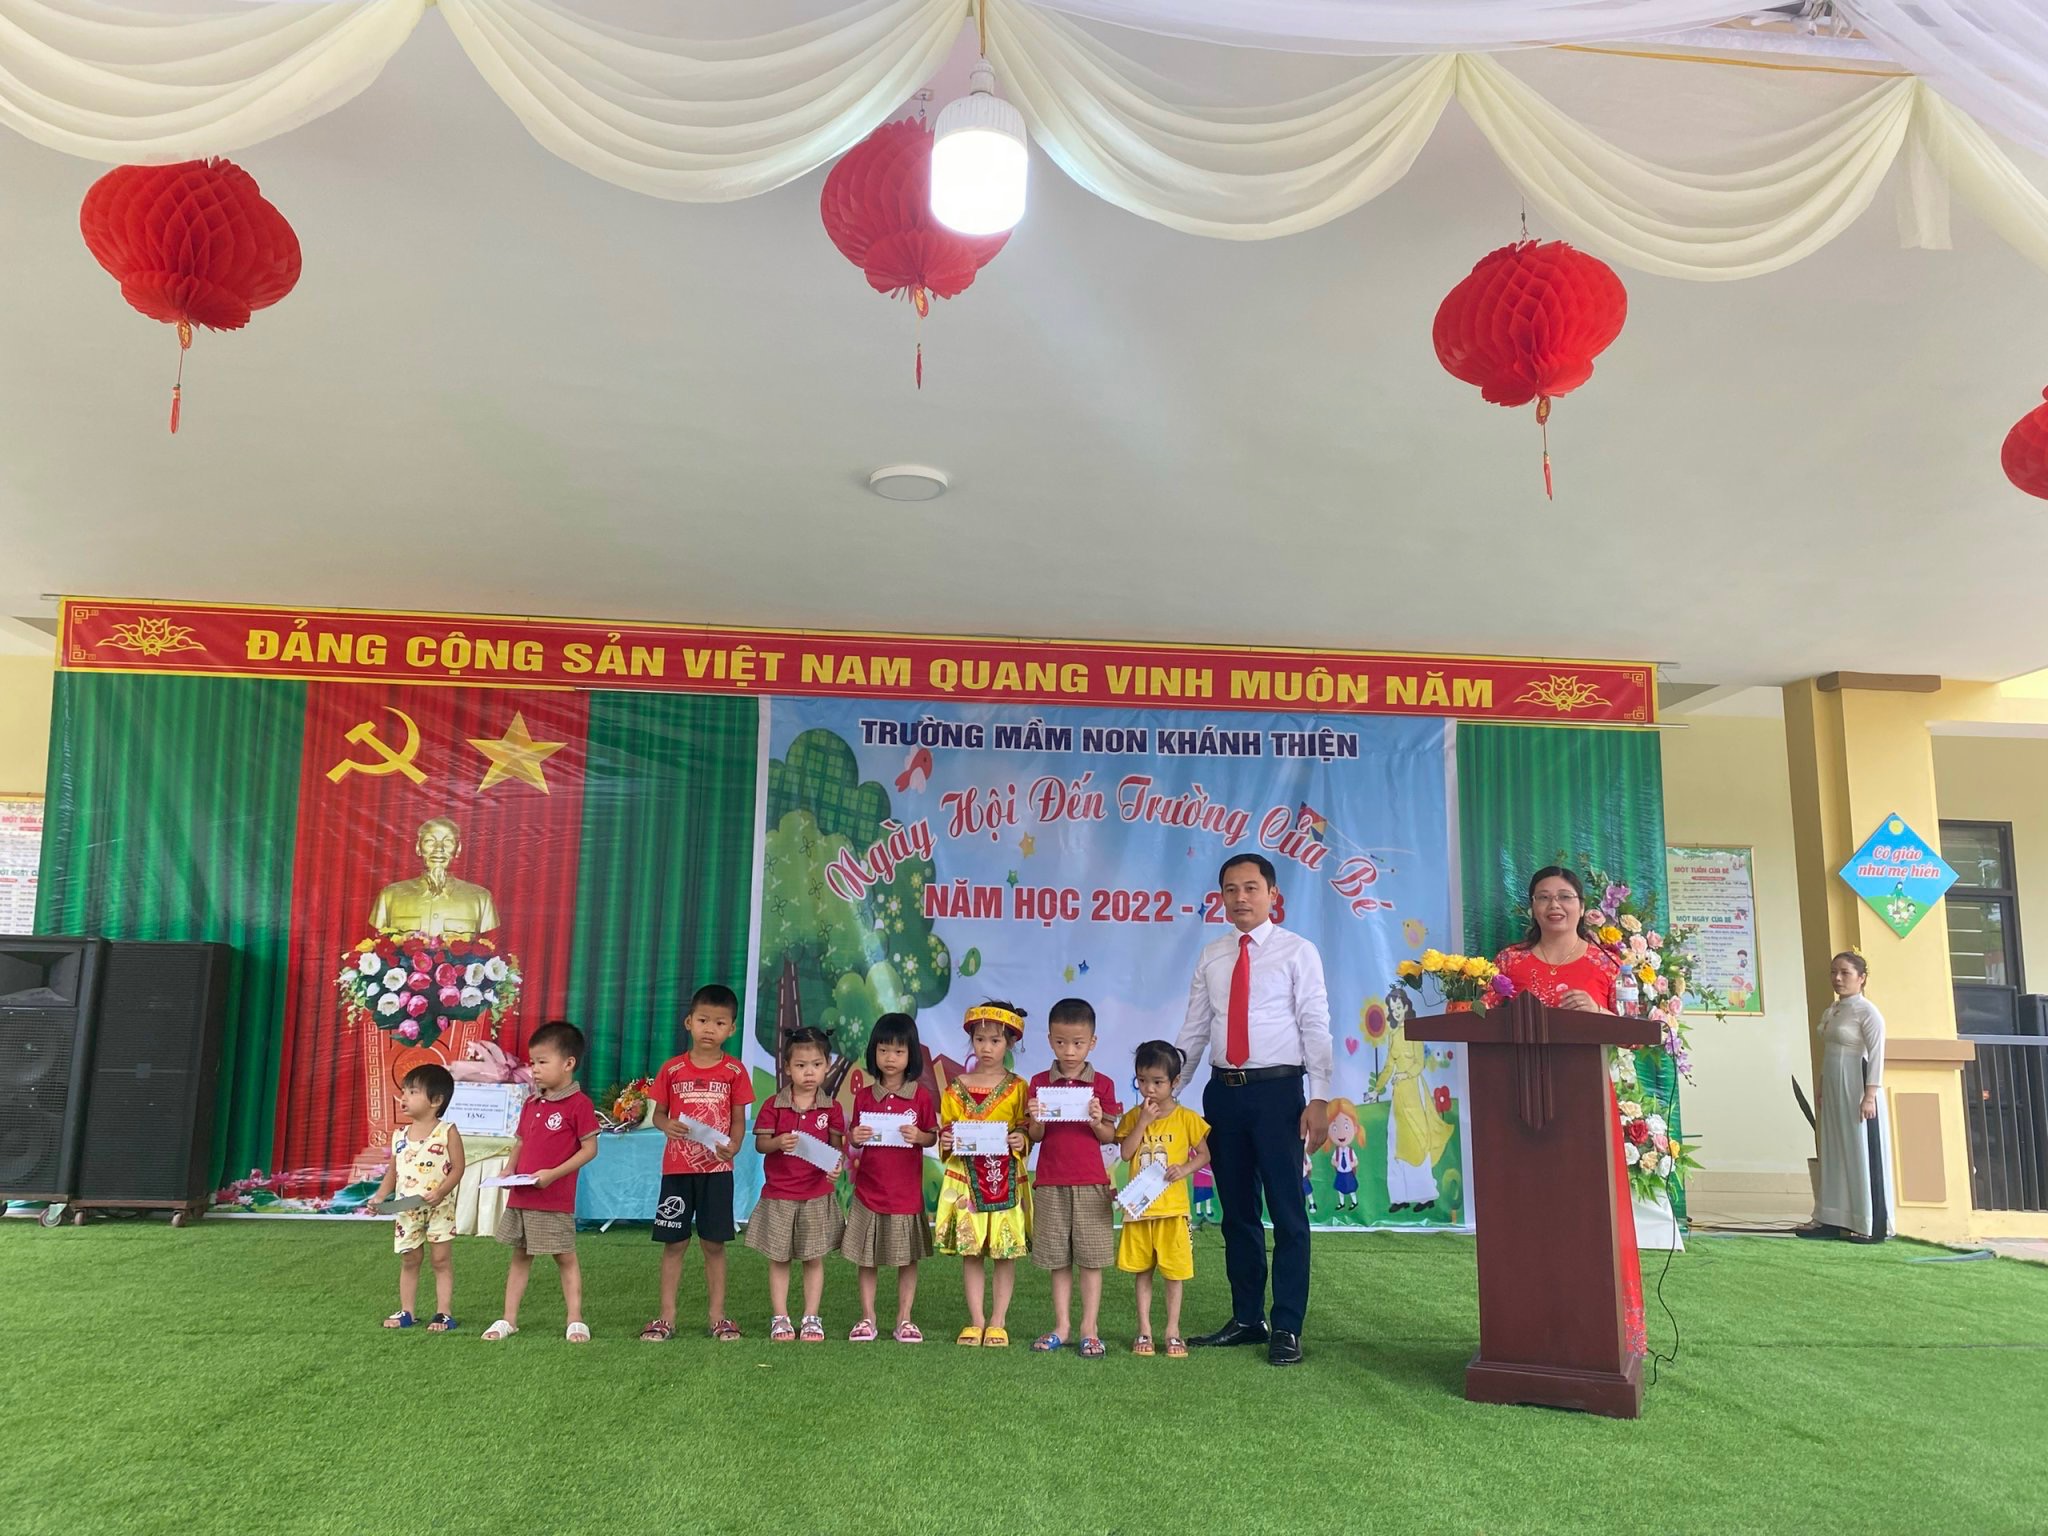 Trường Mầm non Khánh Thiện khai giảng năm học 2022 - 2023